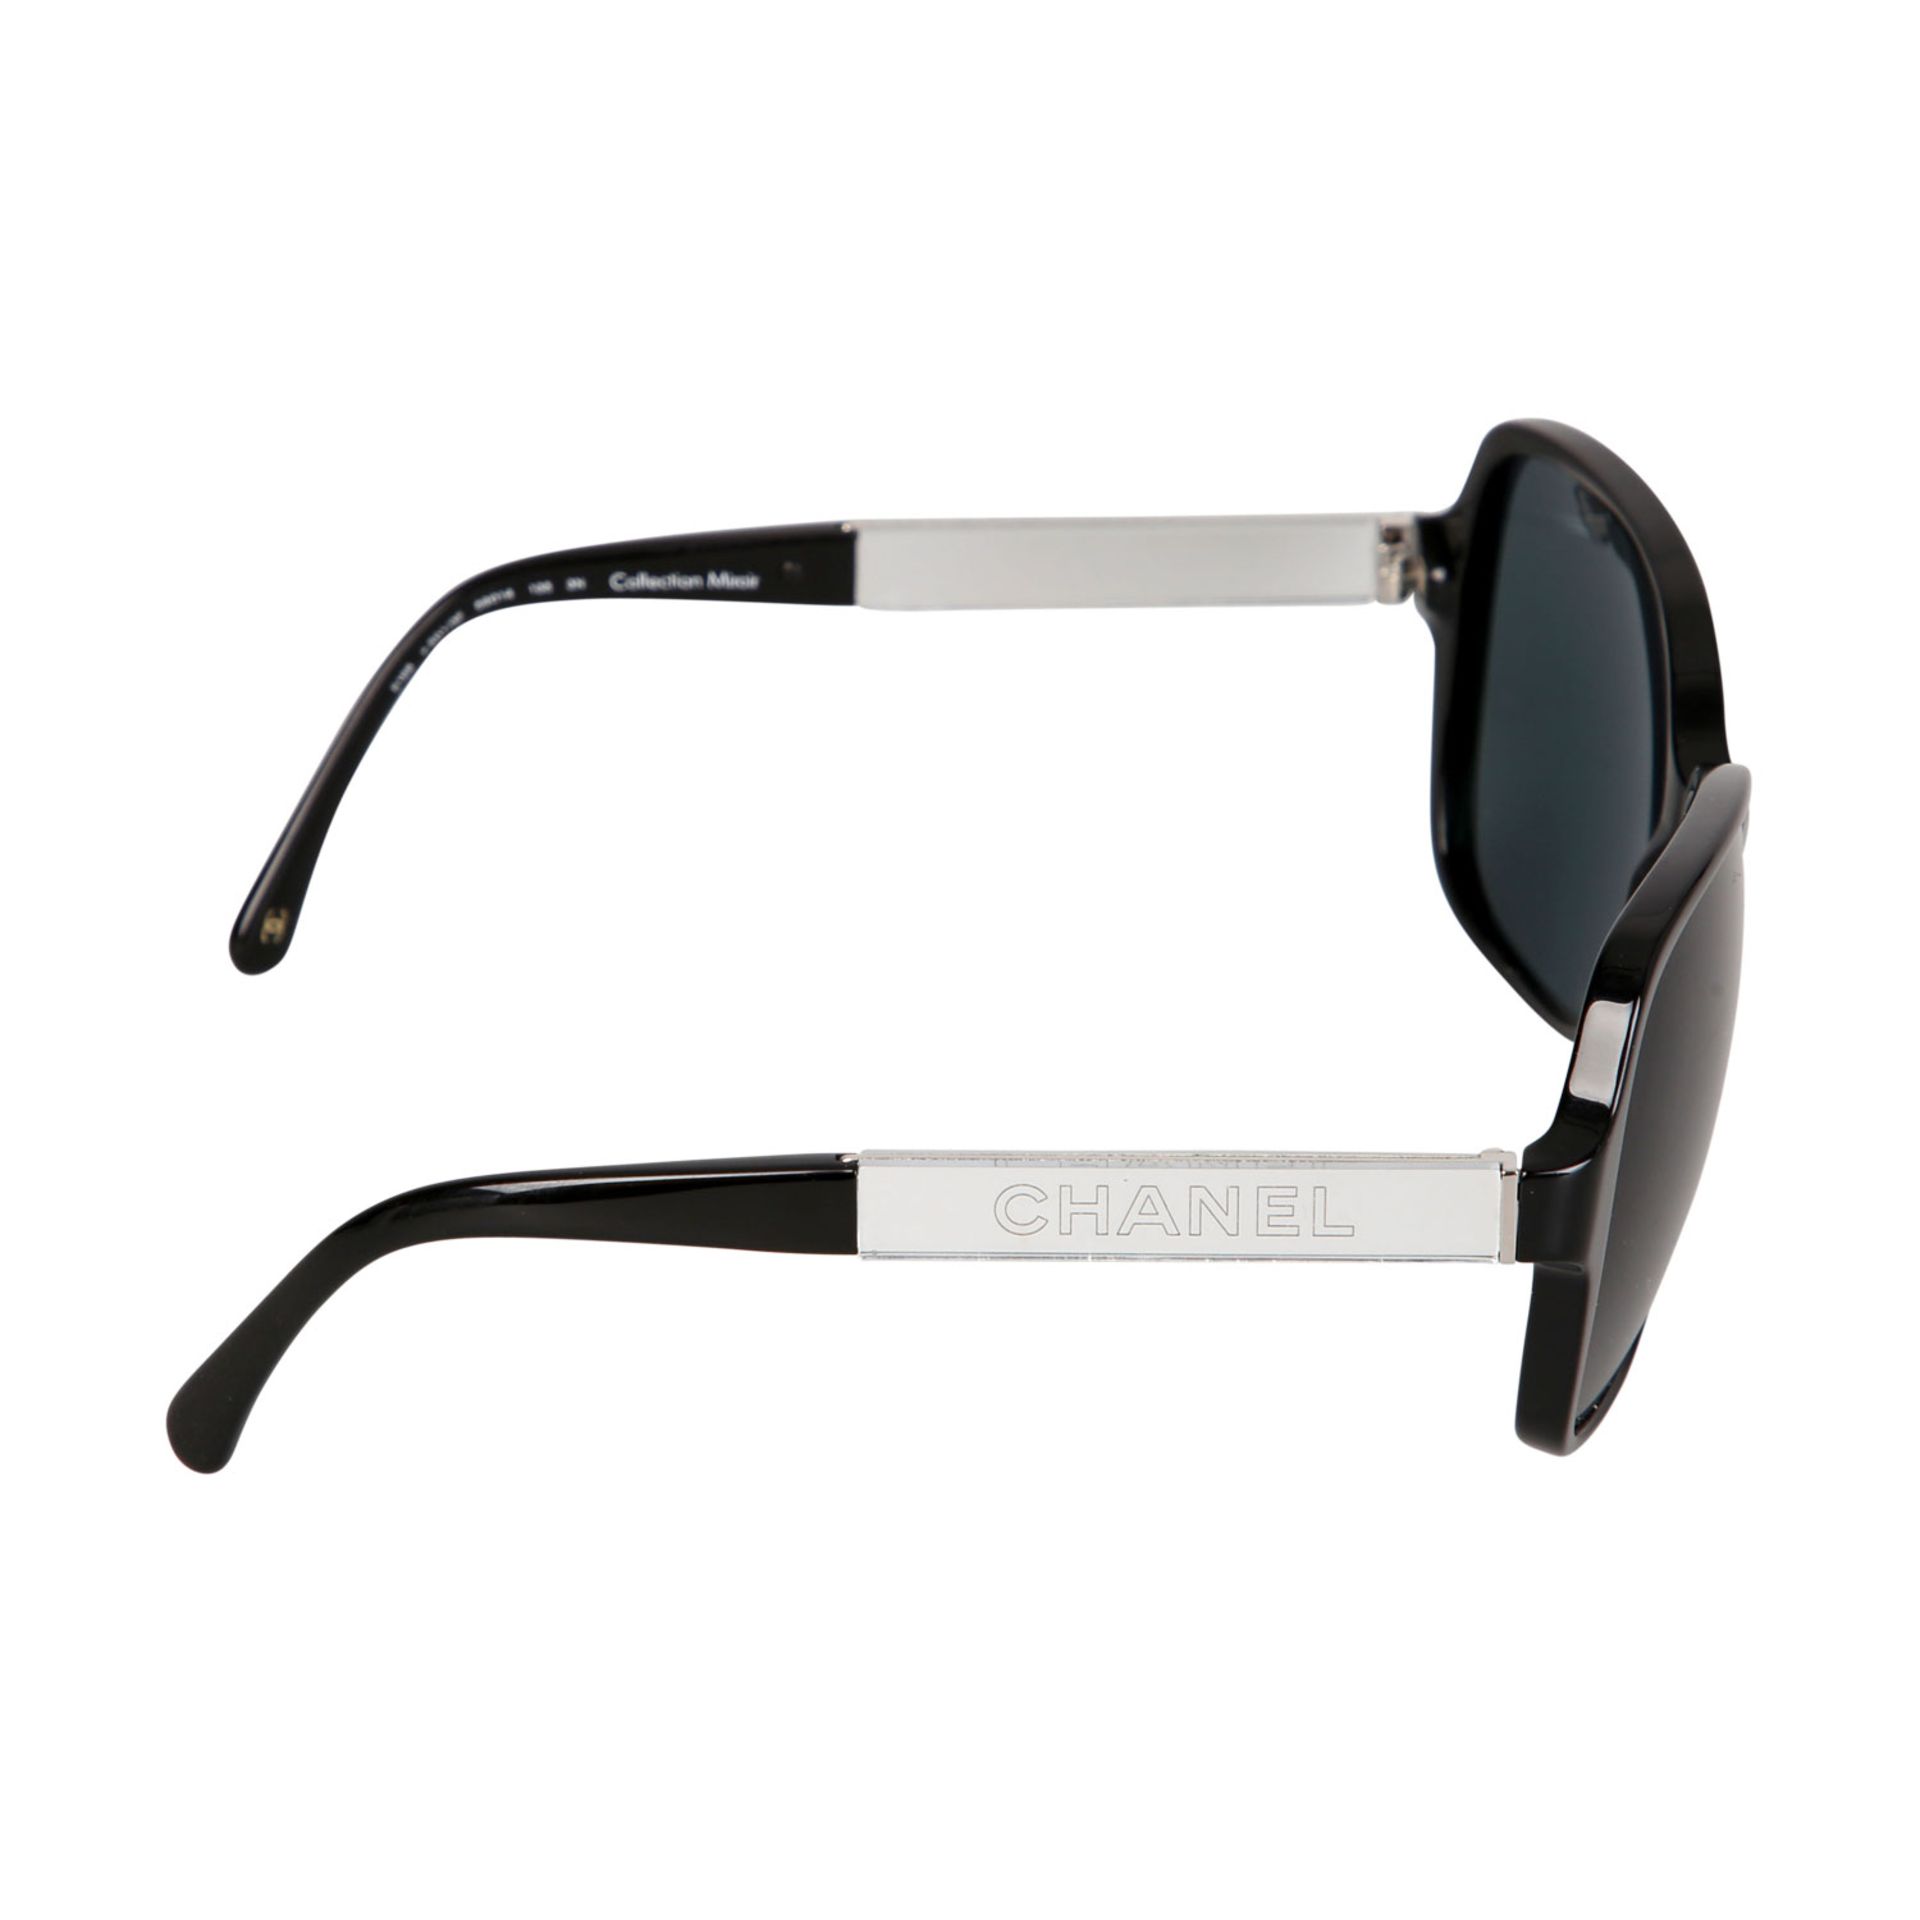 CHANEL Sonnenbrille "COLLECTION MIROR".NP.ca.: 340,-€. Schwarzes Acetat, dunkelgetönte Gläser, - Bild 3 aus 5